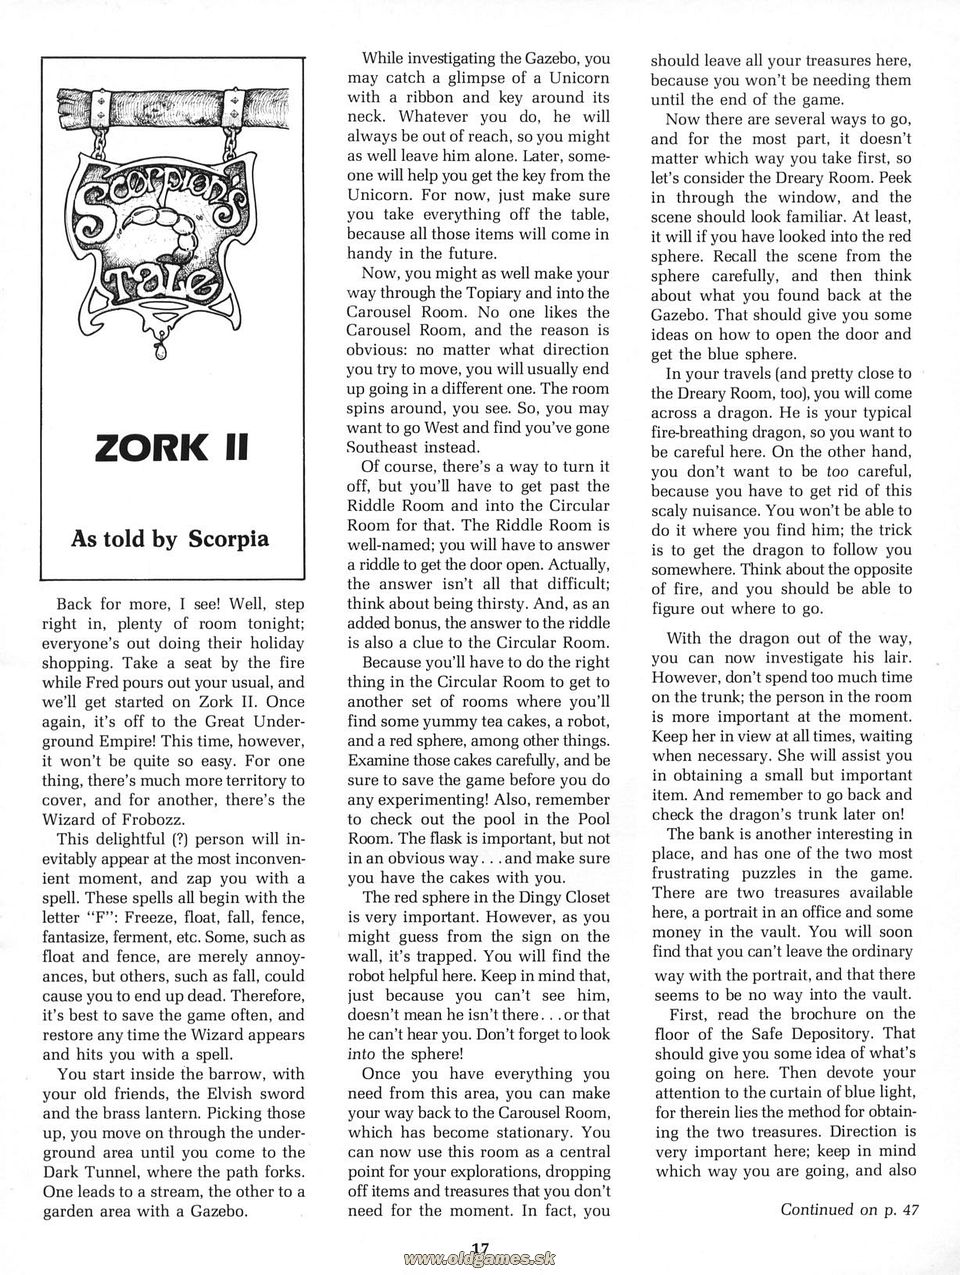 Scorpion's Tale: Zork II